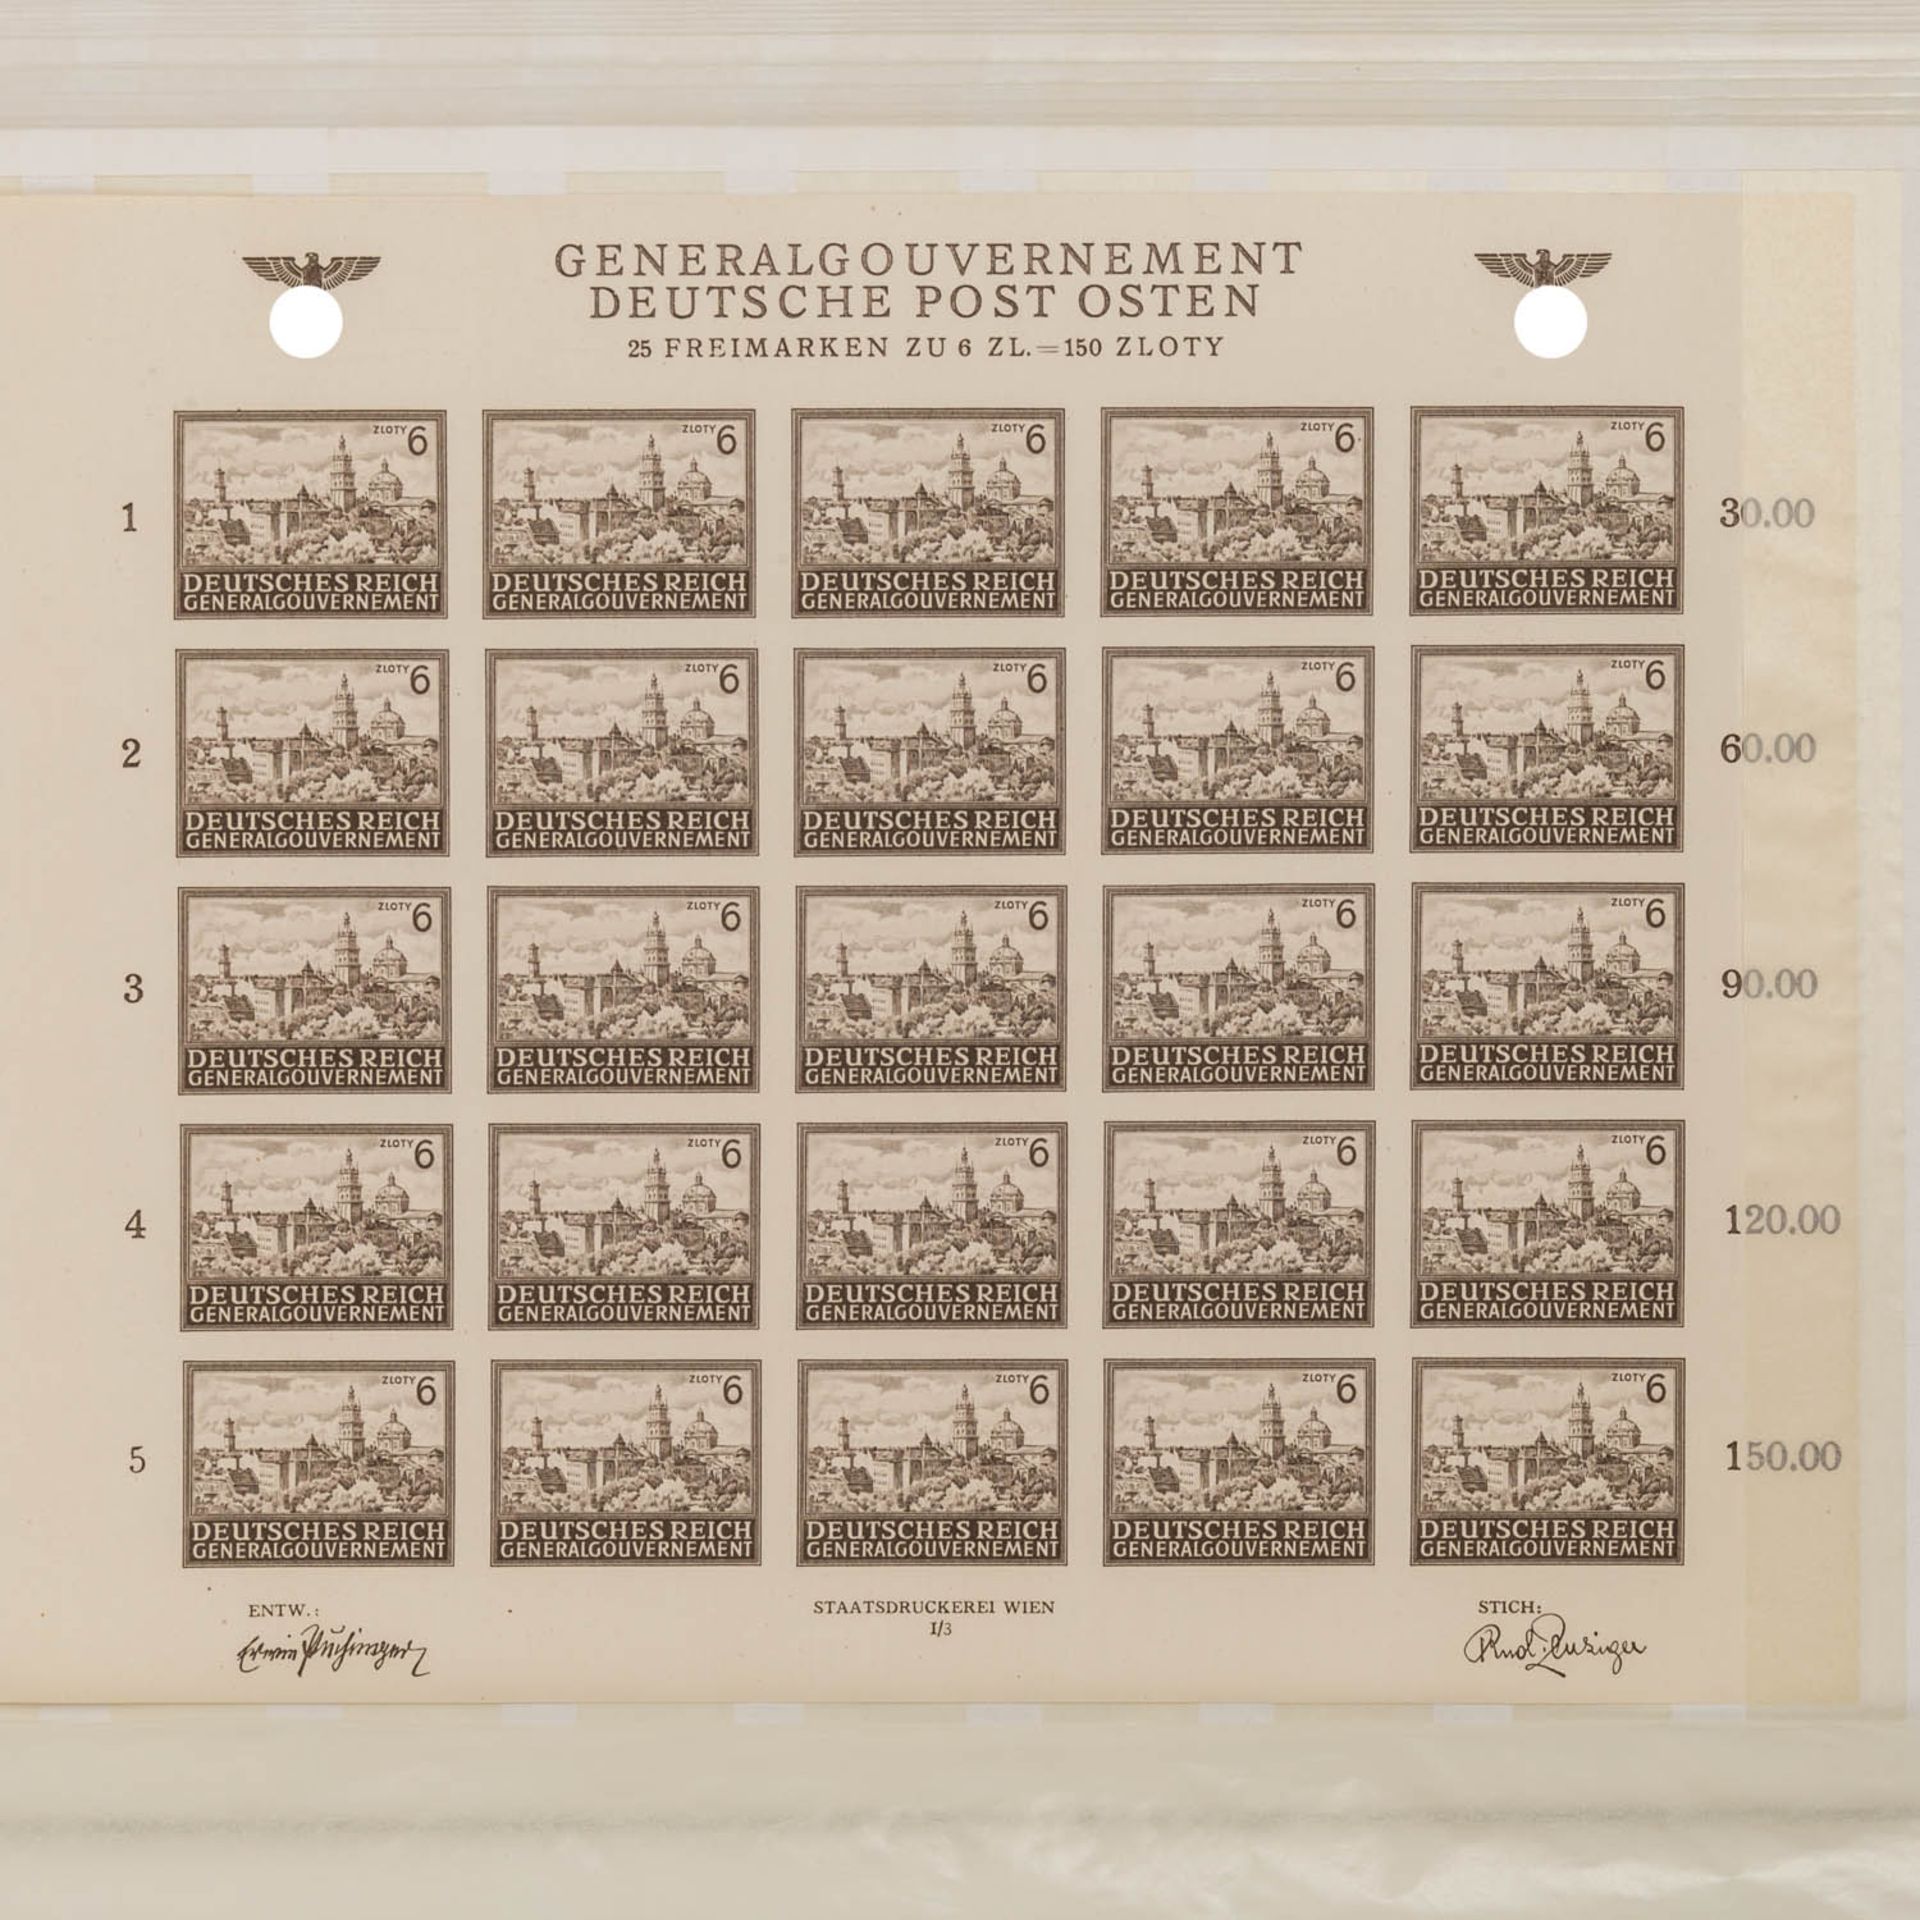 Briefmarkenalbum Böhmen/ Mähren, GeneralgouvernementDickes Einsteckbuch mit postfris - Image 2 of 2